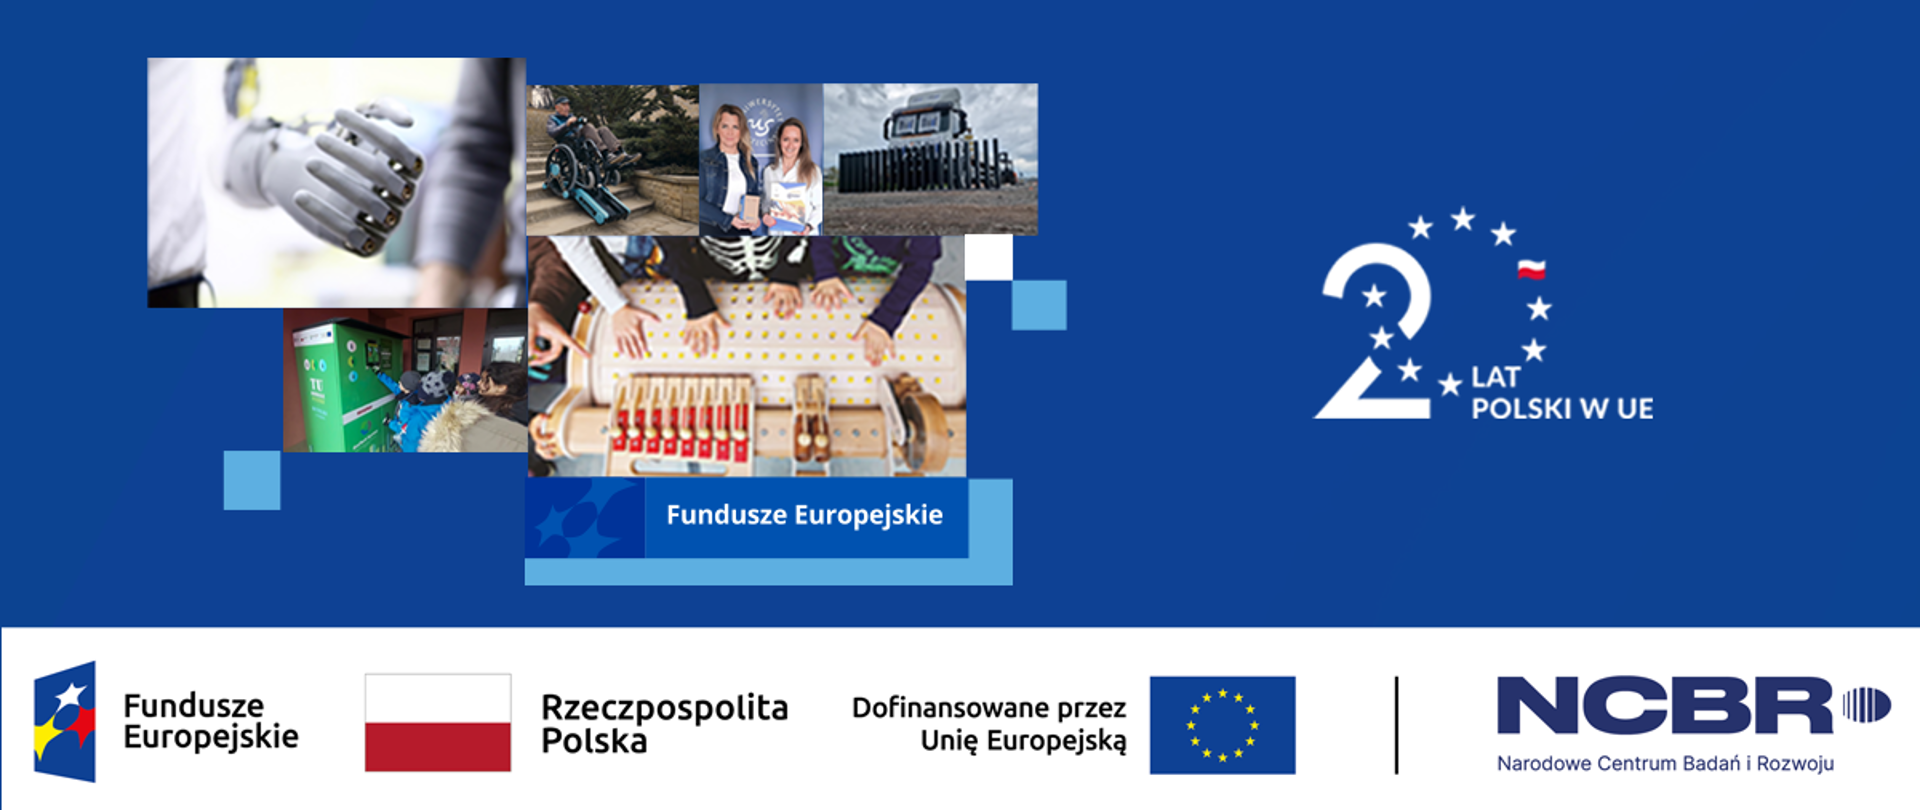 20 lat Polski w UE